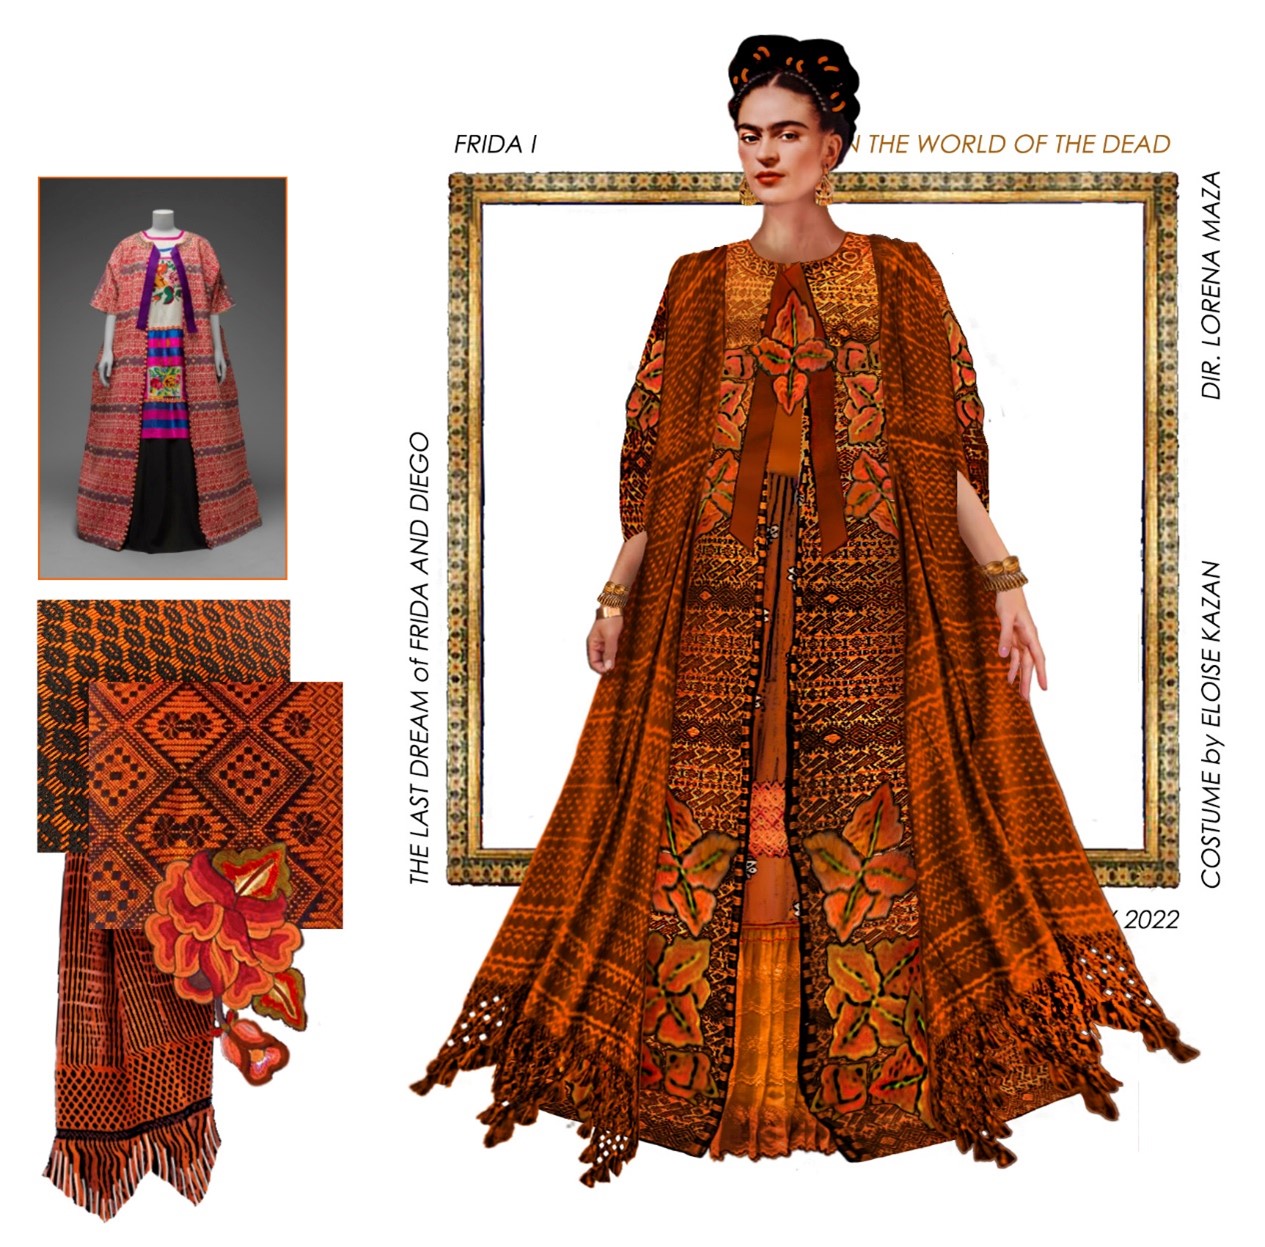 Eloise Kazan’s costume design for Frida Kahlo’s underworld costume